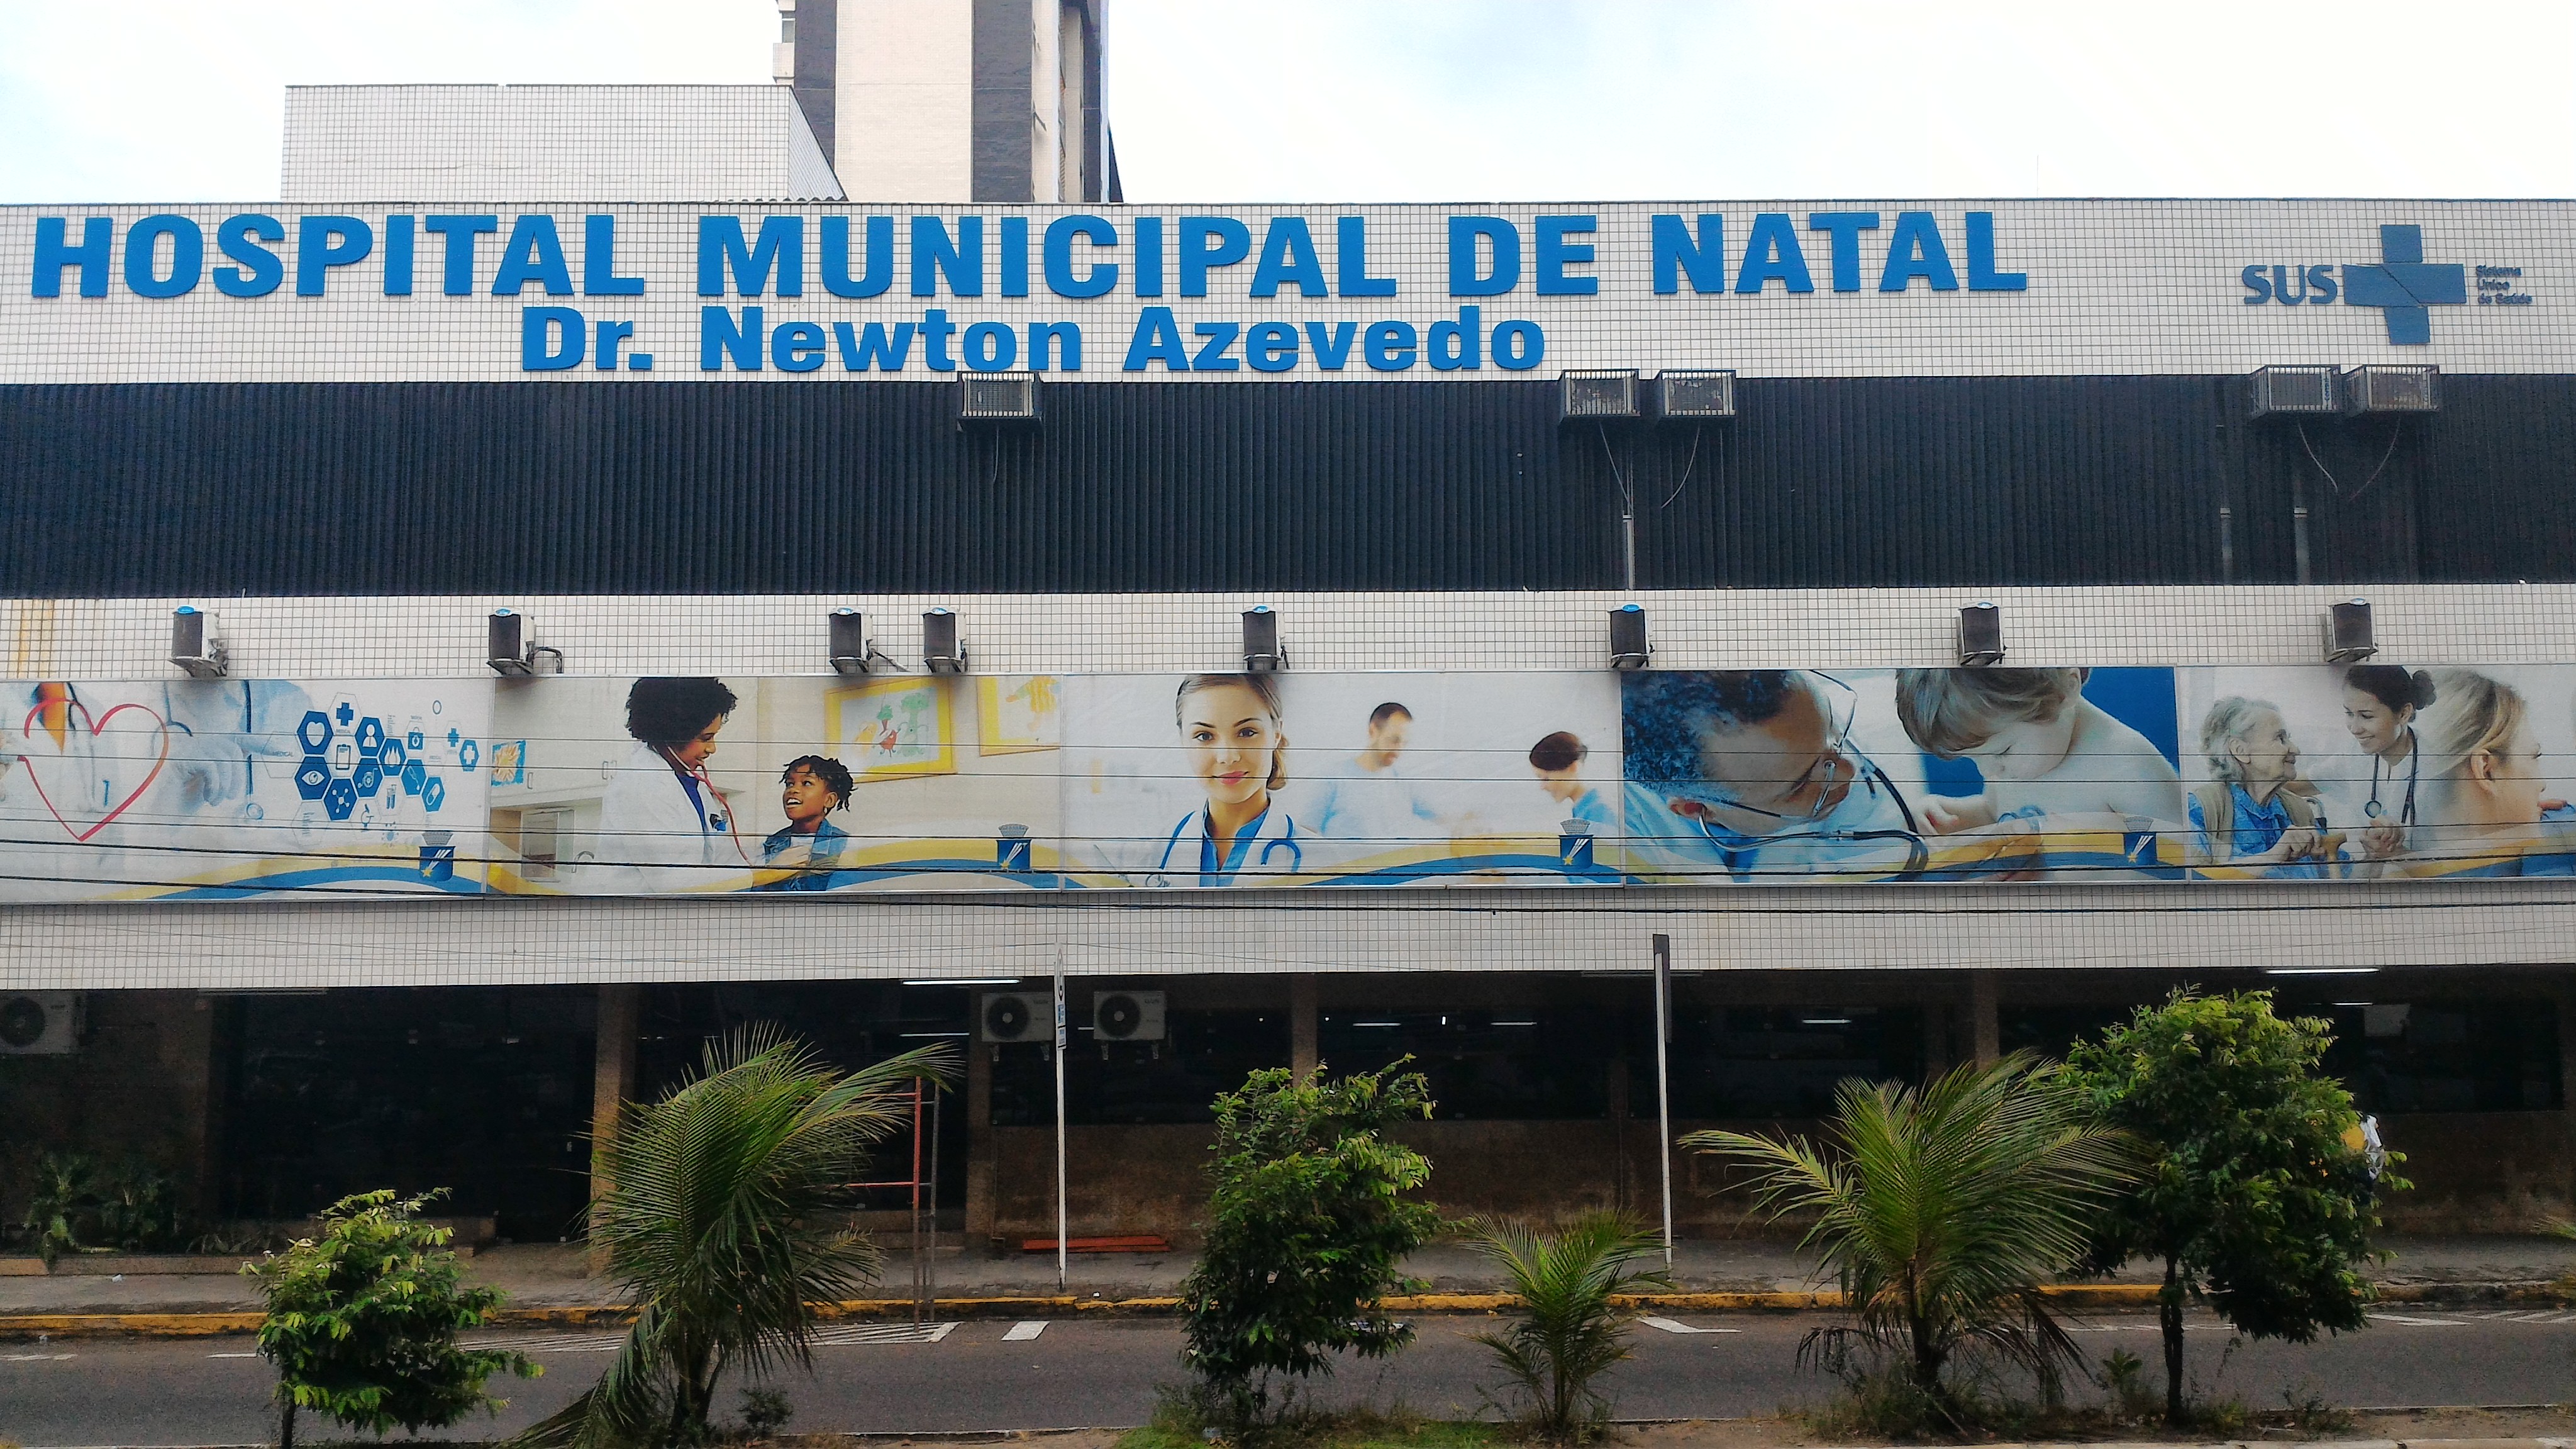 SMS institui Comissão de Residência Médica do Hospital Municipal de Natal